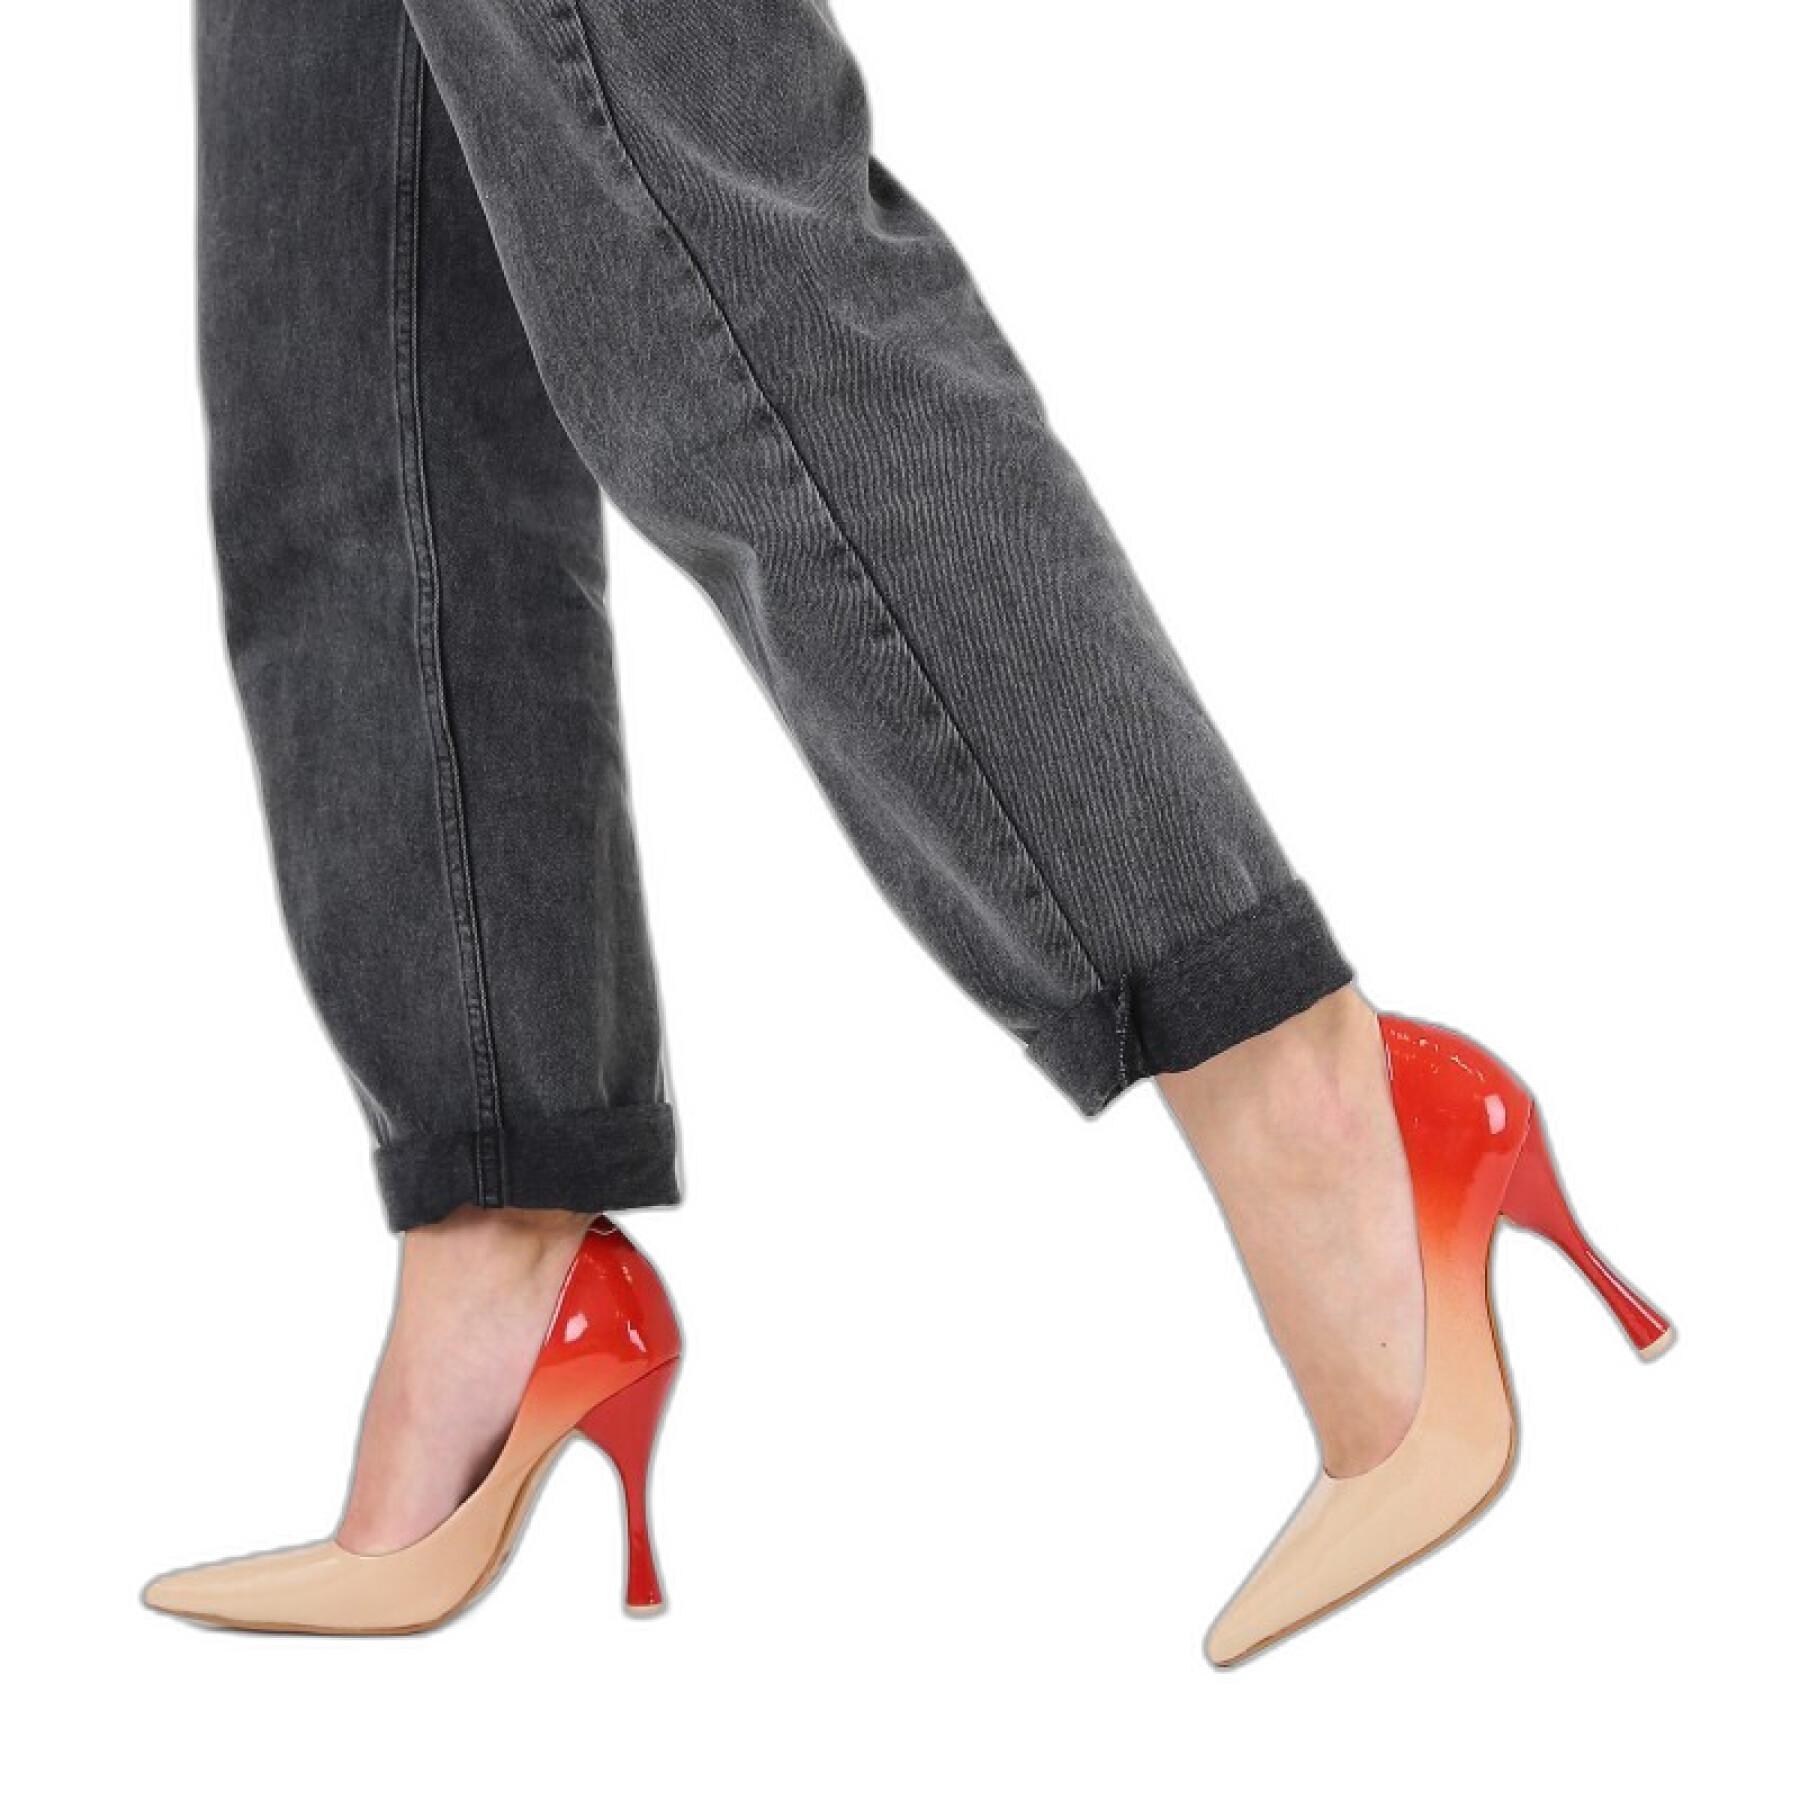 Women's high heel pumps Bronx Mysterious